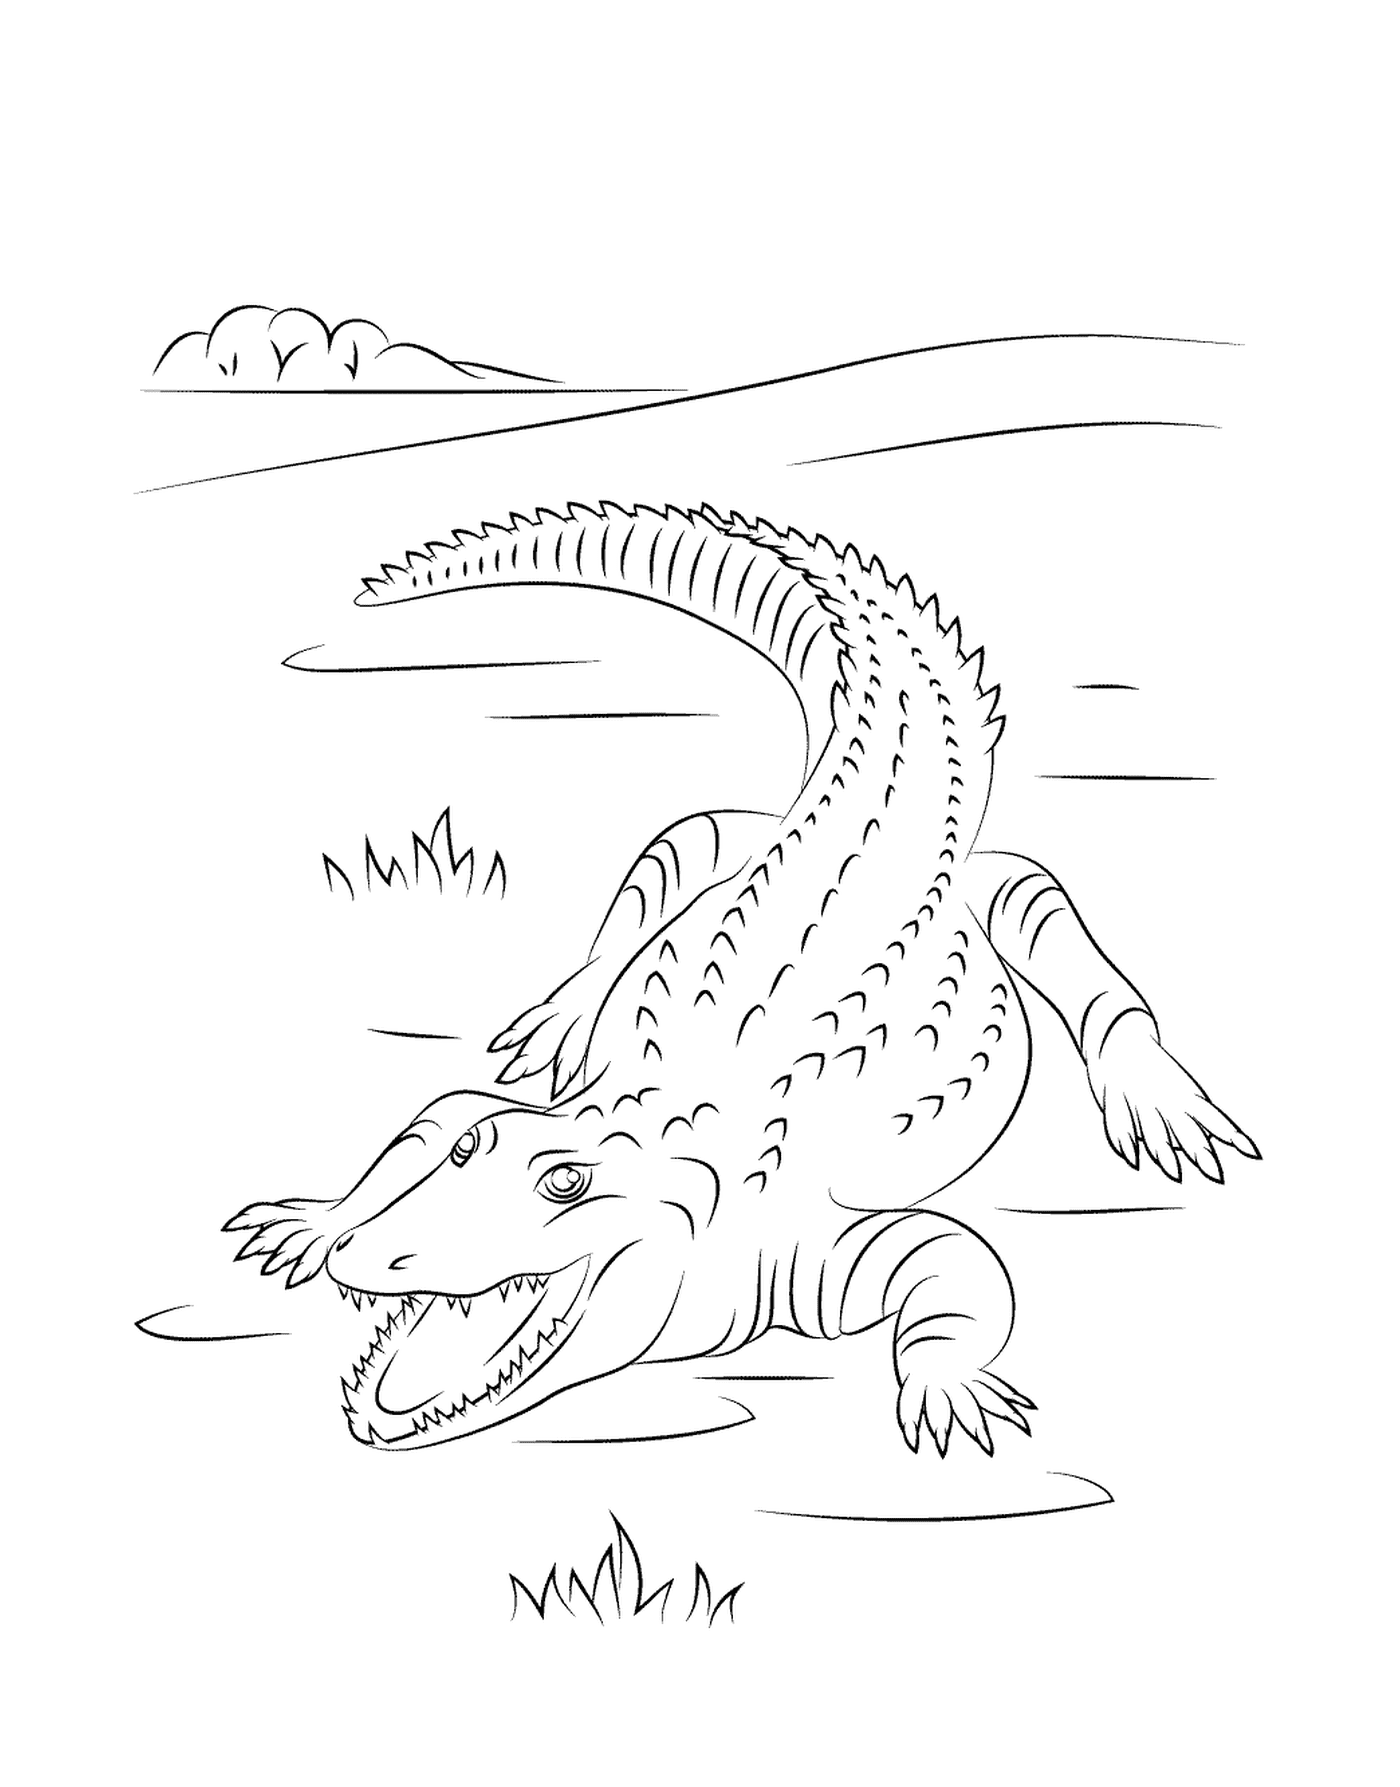   Un crocodile du Nil mignon dans l'eau 